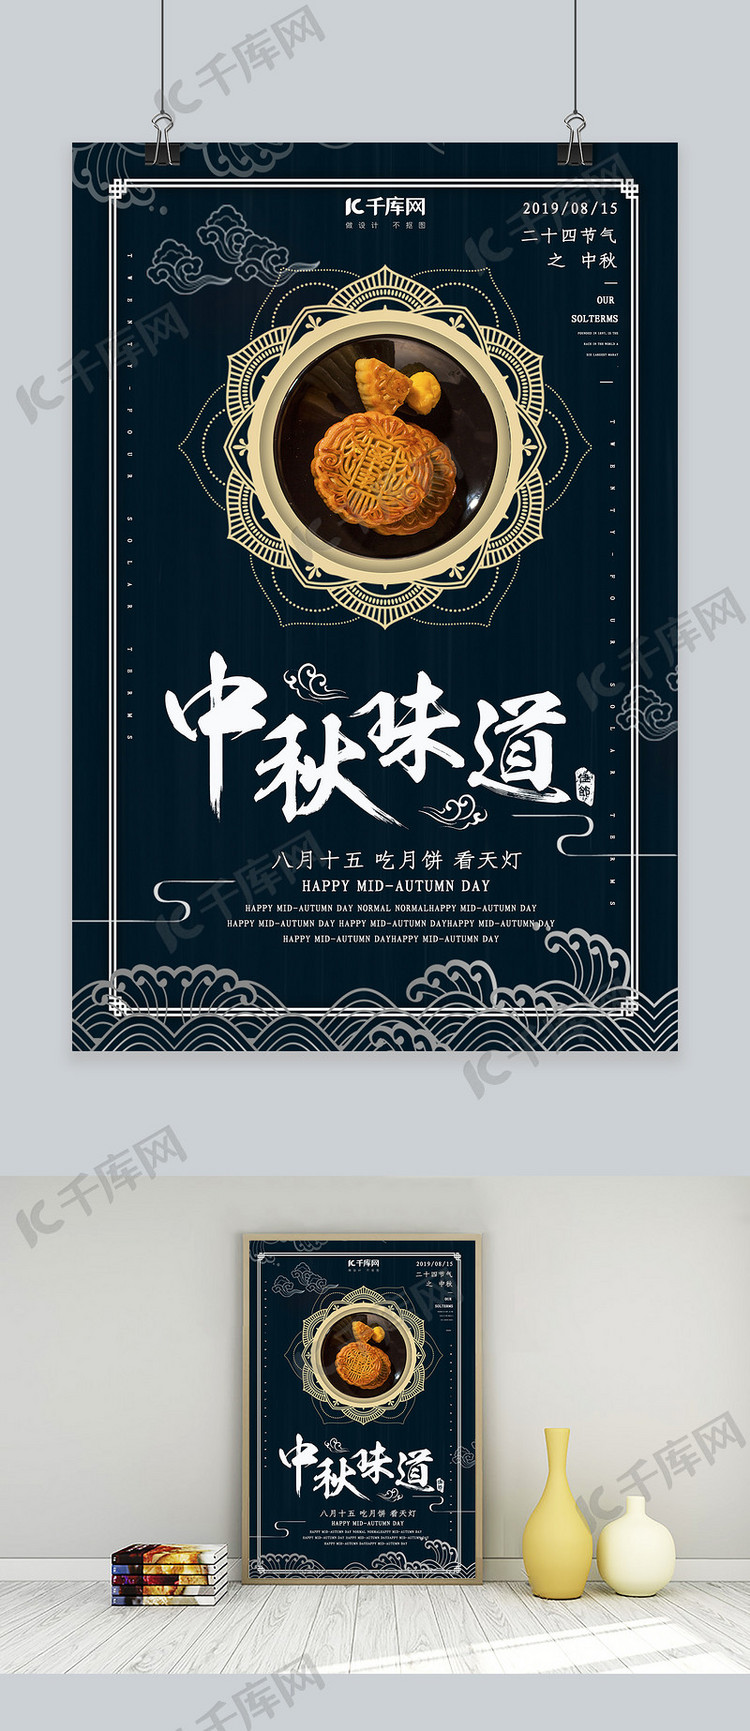 简约创意合成摄影复古中国风中秋节月饼海报